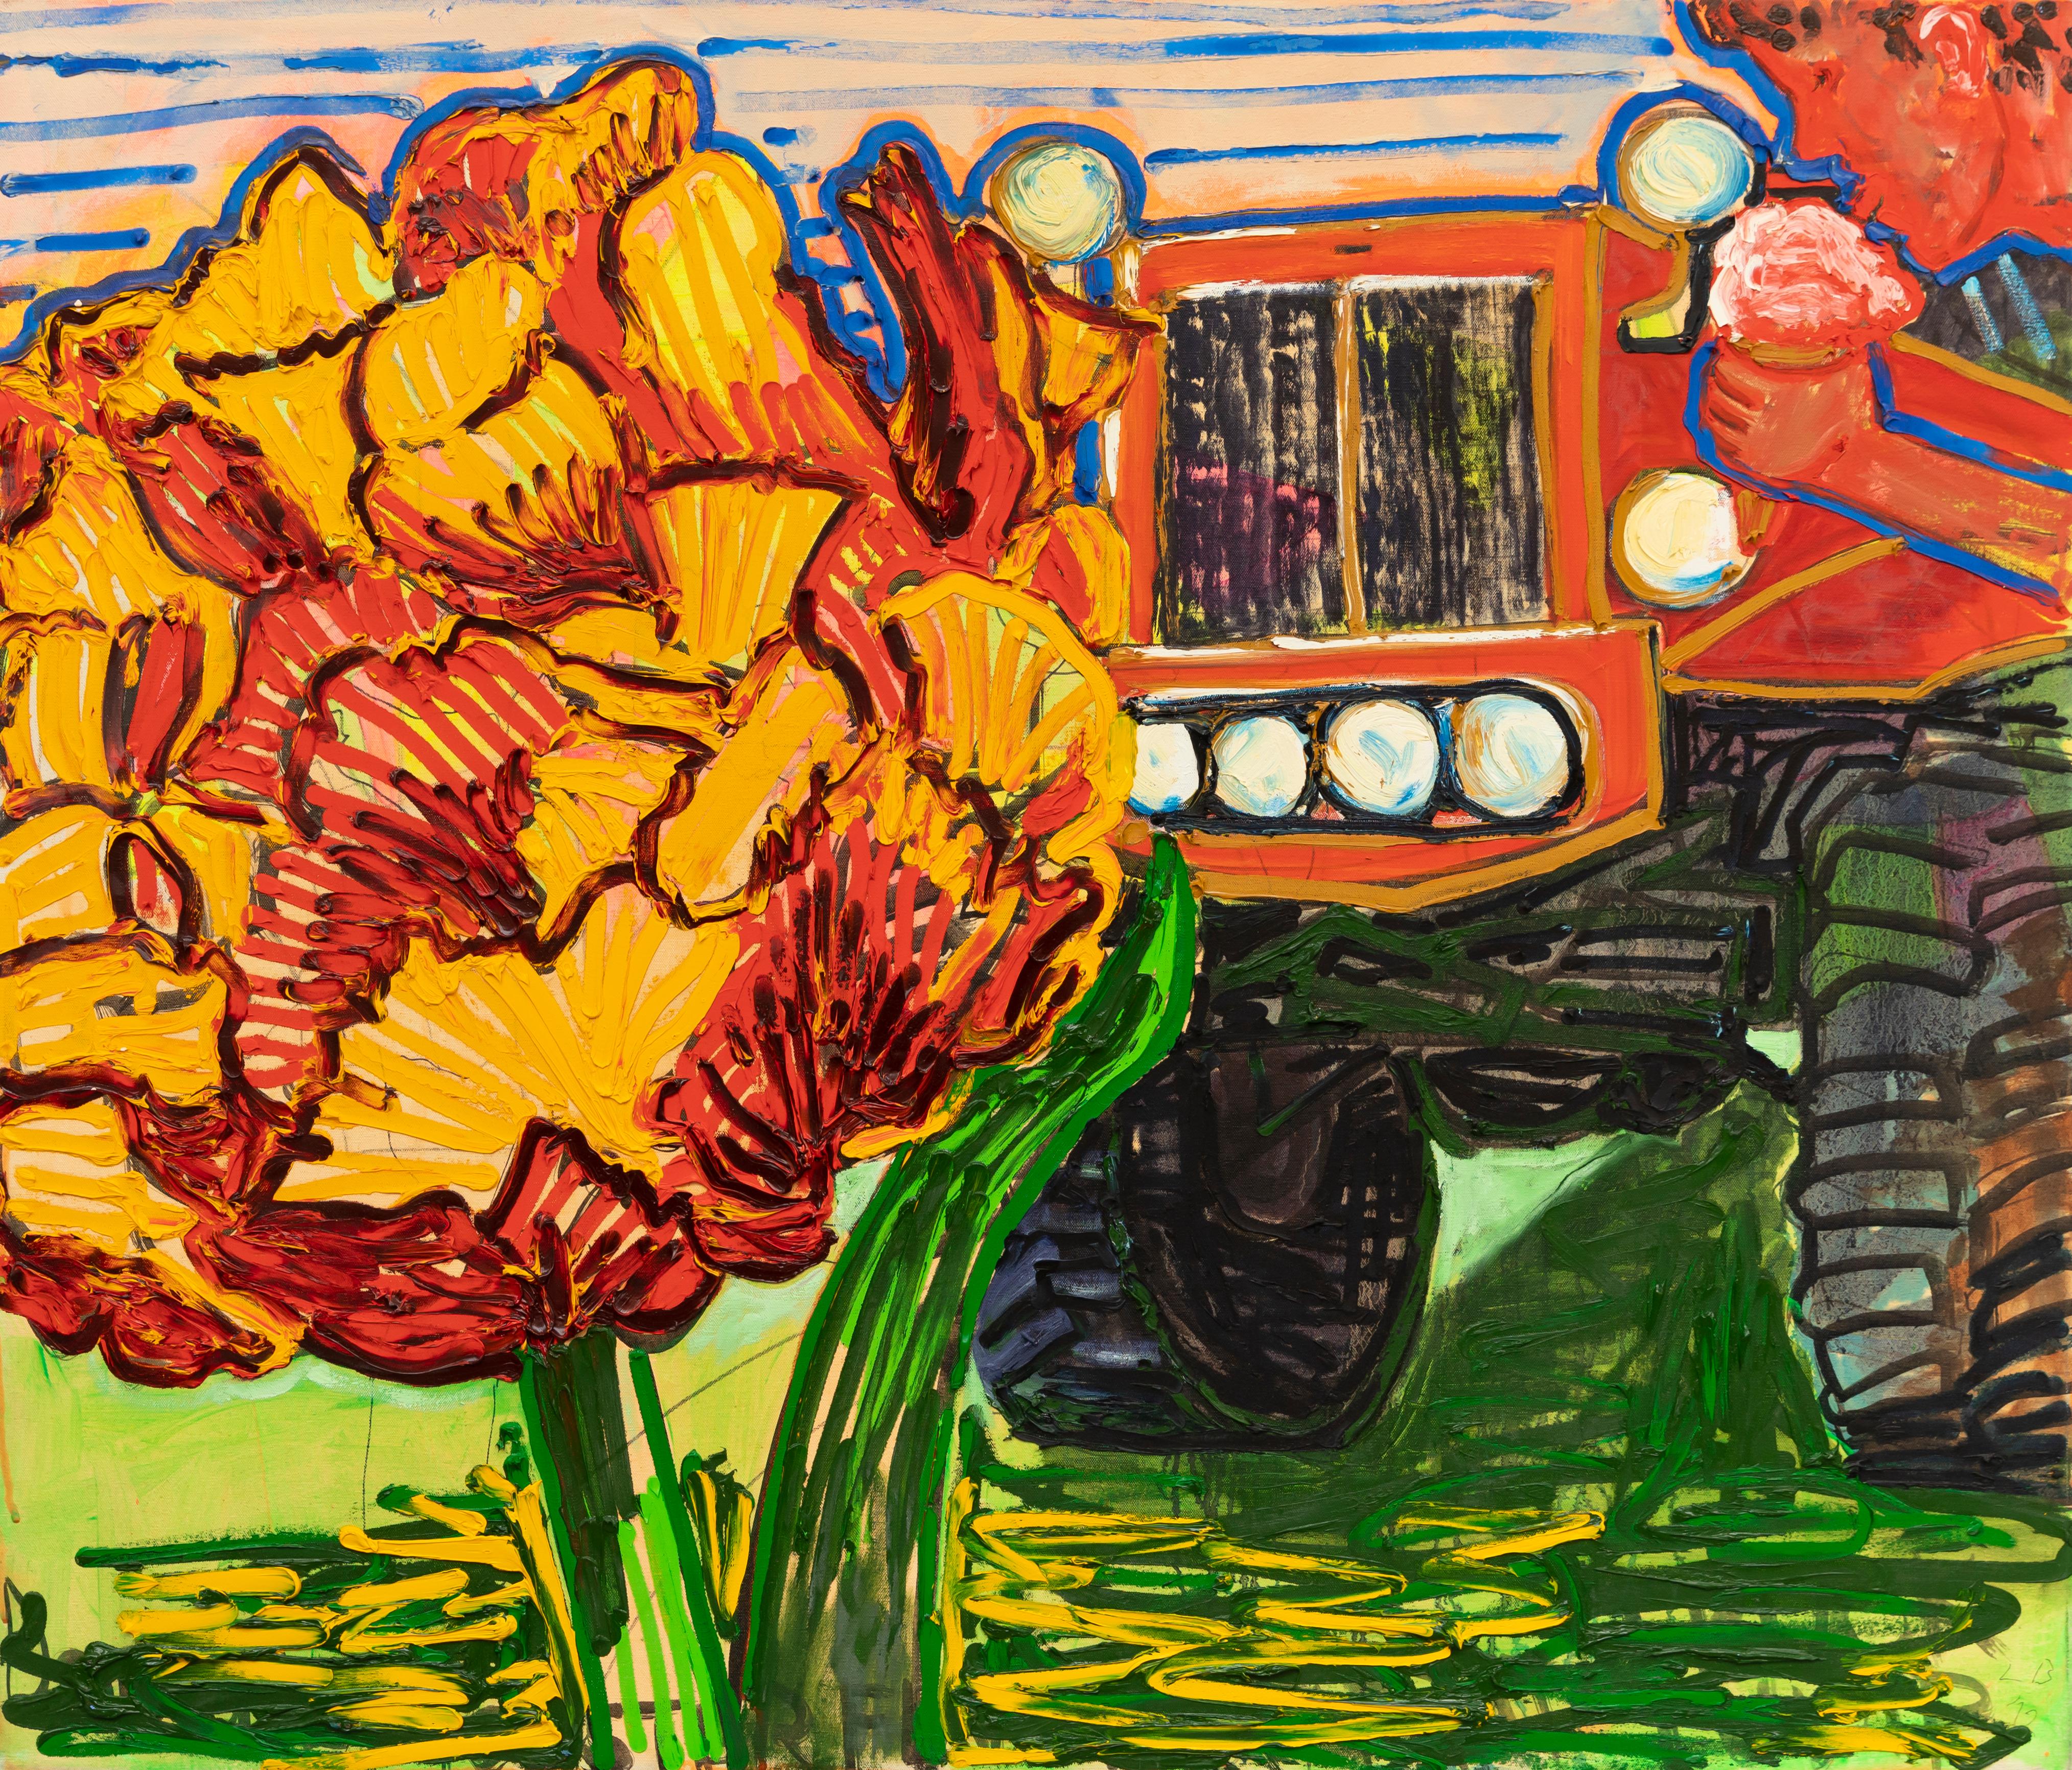 Artiste : Leslie Bostrom
Titre : Tulipe, camion, crème glacée
Taille : 36 x 42 pouces
Médium : Huile sur toile
Année : 2012

Leslie Bostrom est professeur d'art à l'université Brown et s'intéresse principalement à la peinture, à la gravure et au